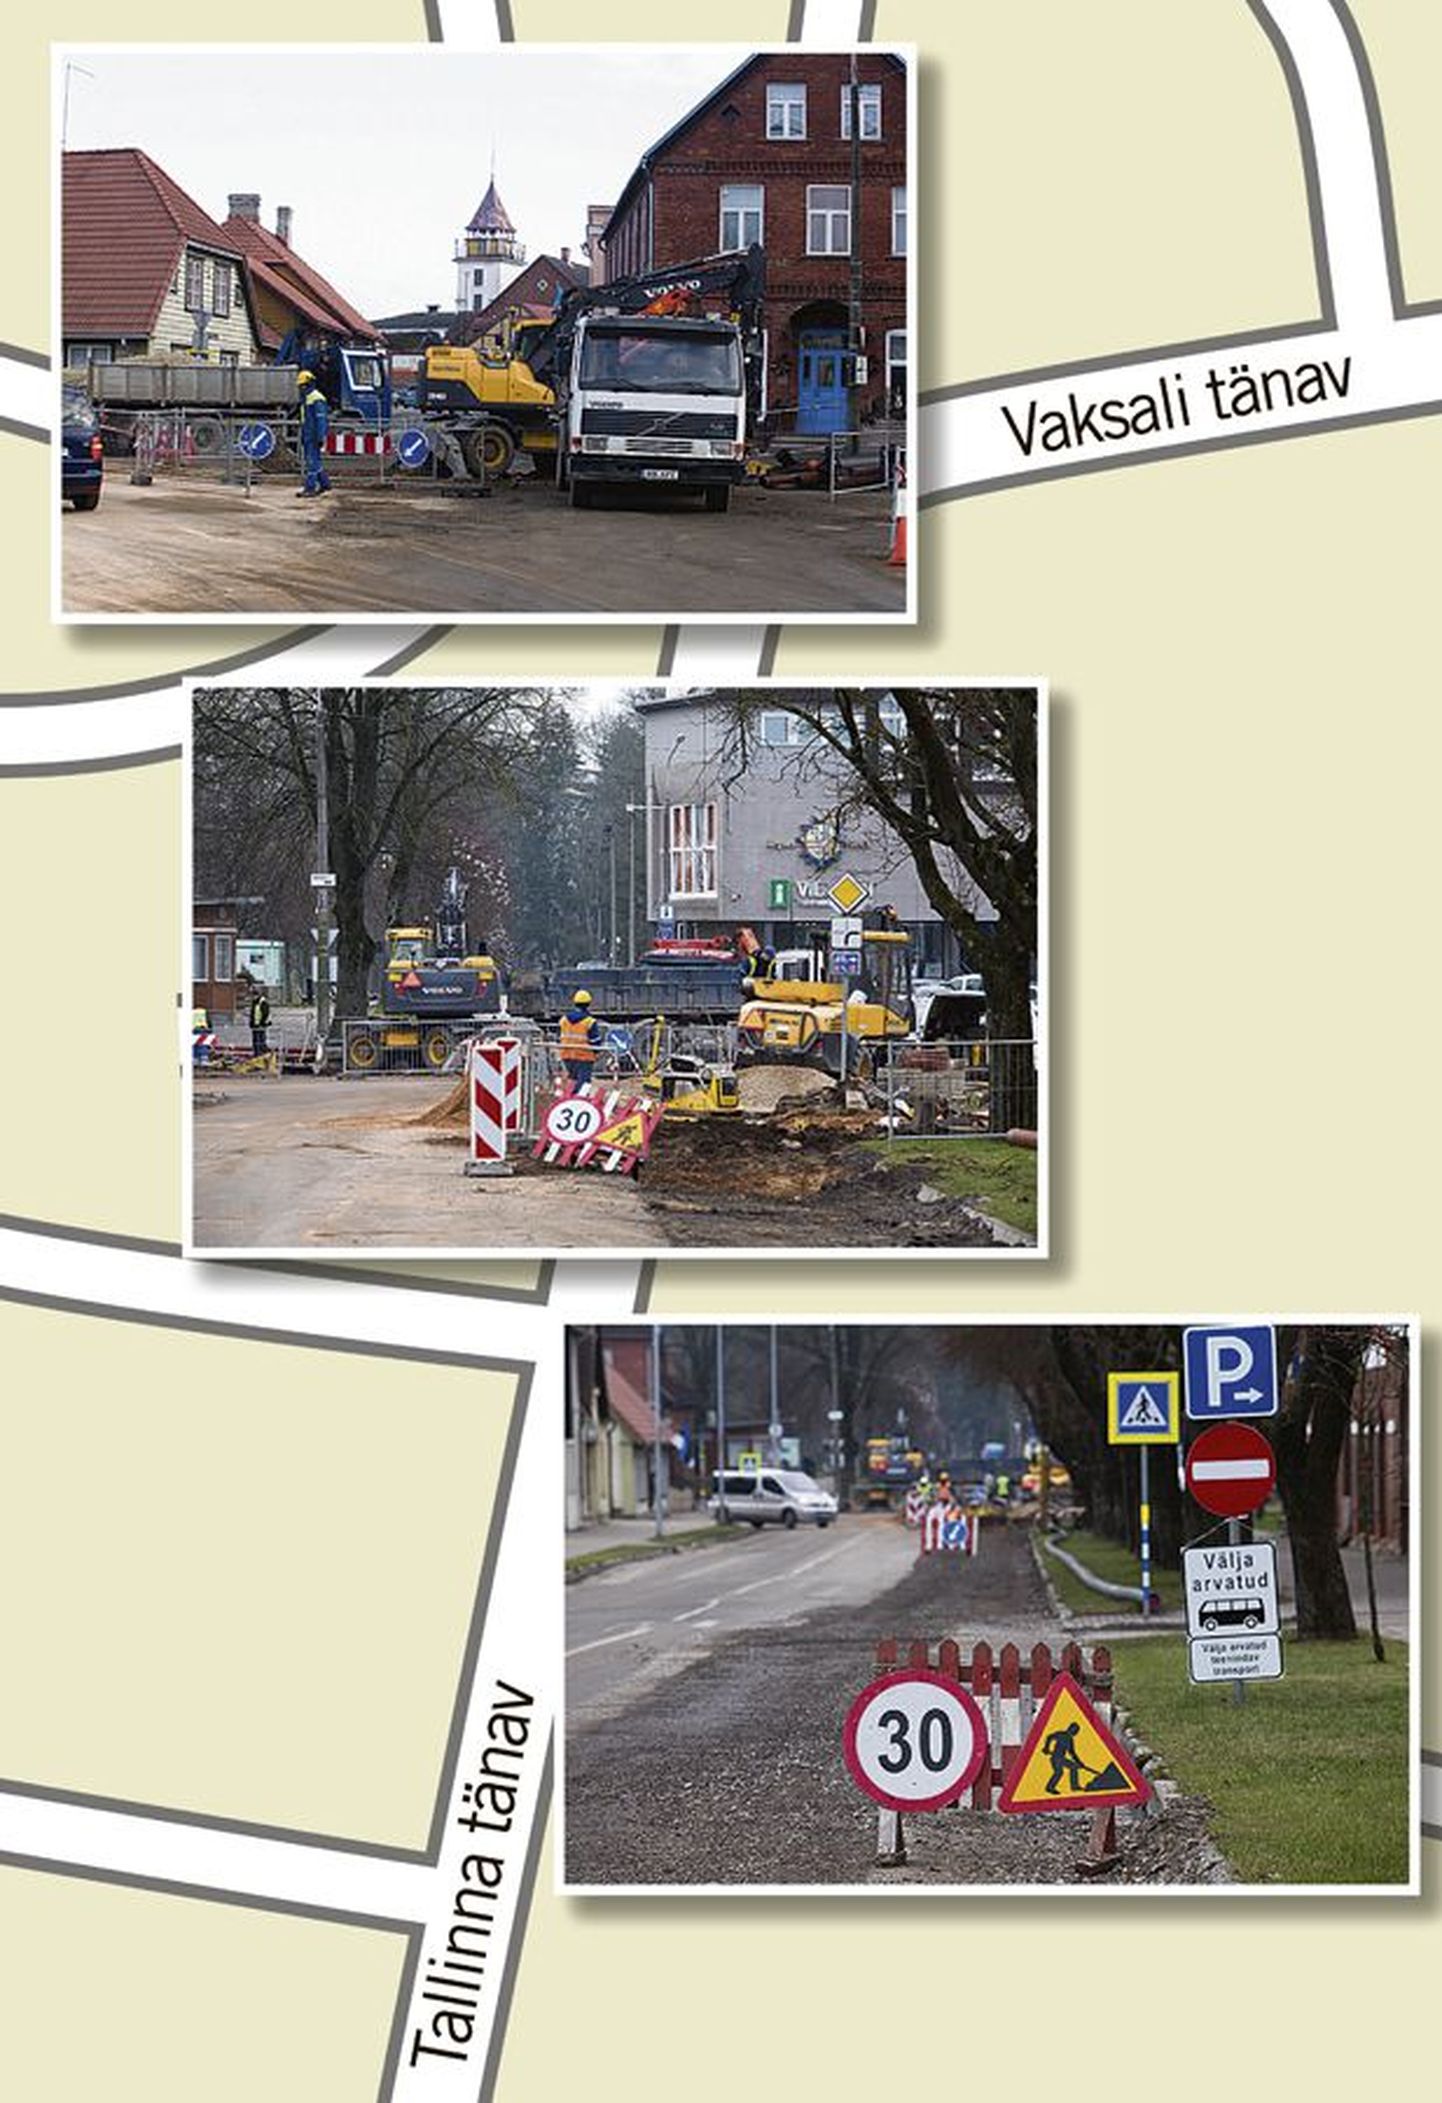 Viljandi liikluse tuiksoonel Tallinna ja Vaksali tänaval käivad juba paar nädalat ehitustööd ning seetõttu on sõit eri suundadest piiratud. Kuigi ametlikult tohivad seal liikuda ainult ühis- ja teenindavad sõidukid, lasevad ehitajad läbi ka teisi.